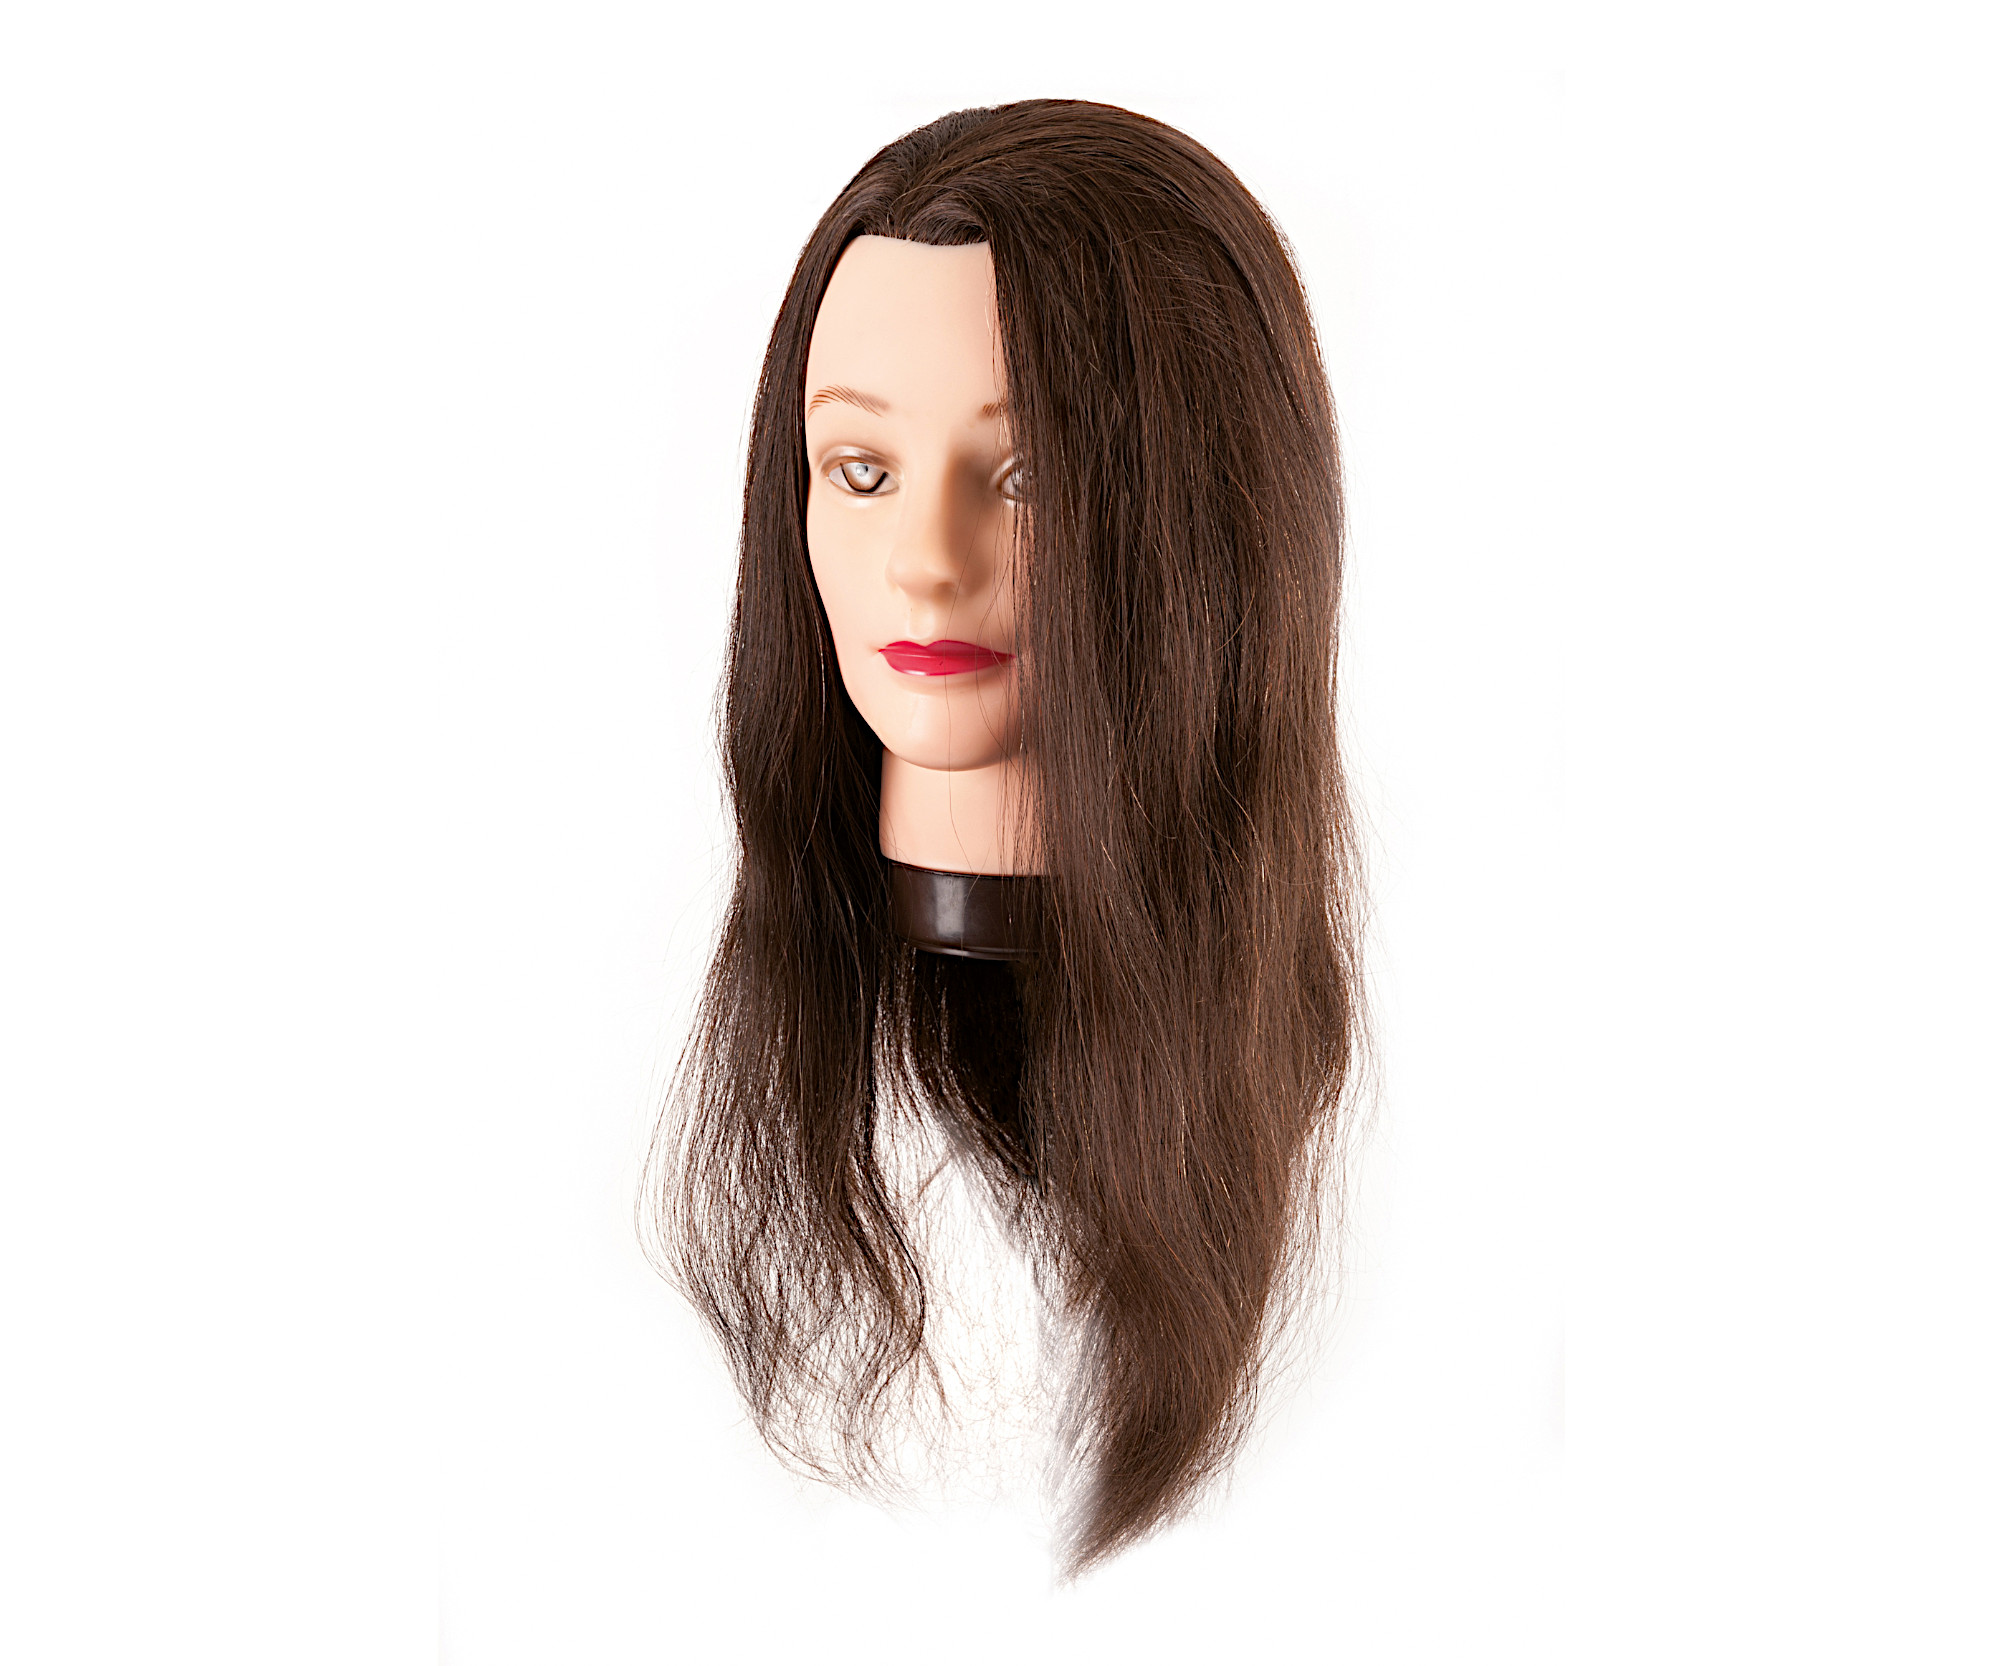 Cvičná hlava s přírodními vlasy Eurostil Profesional - kaštanově hnědá, 45-50 cm (00603) + dárek zdarma